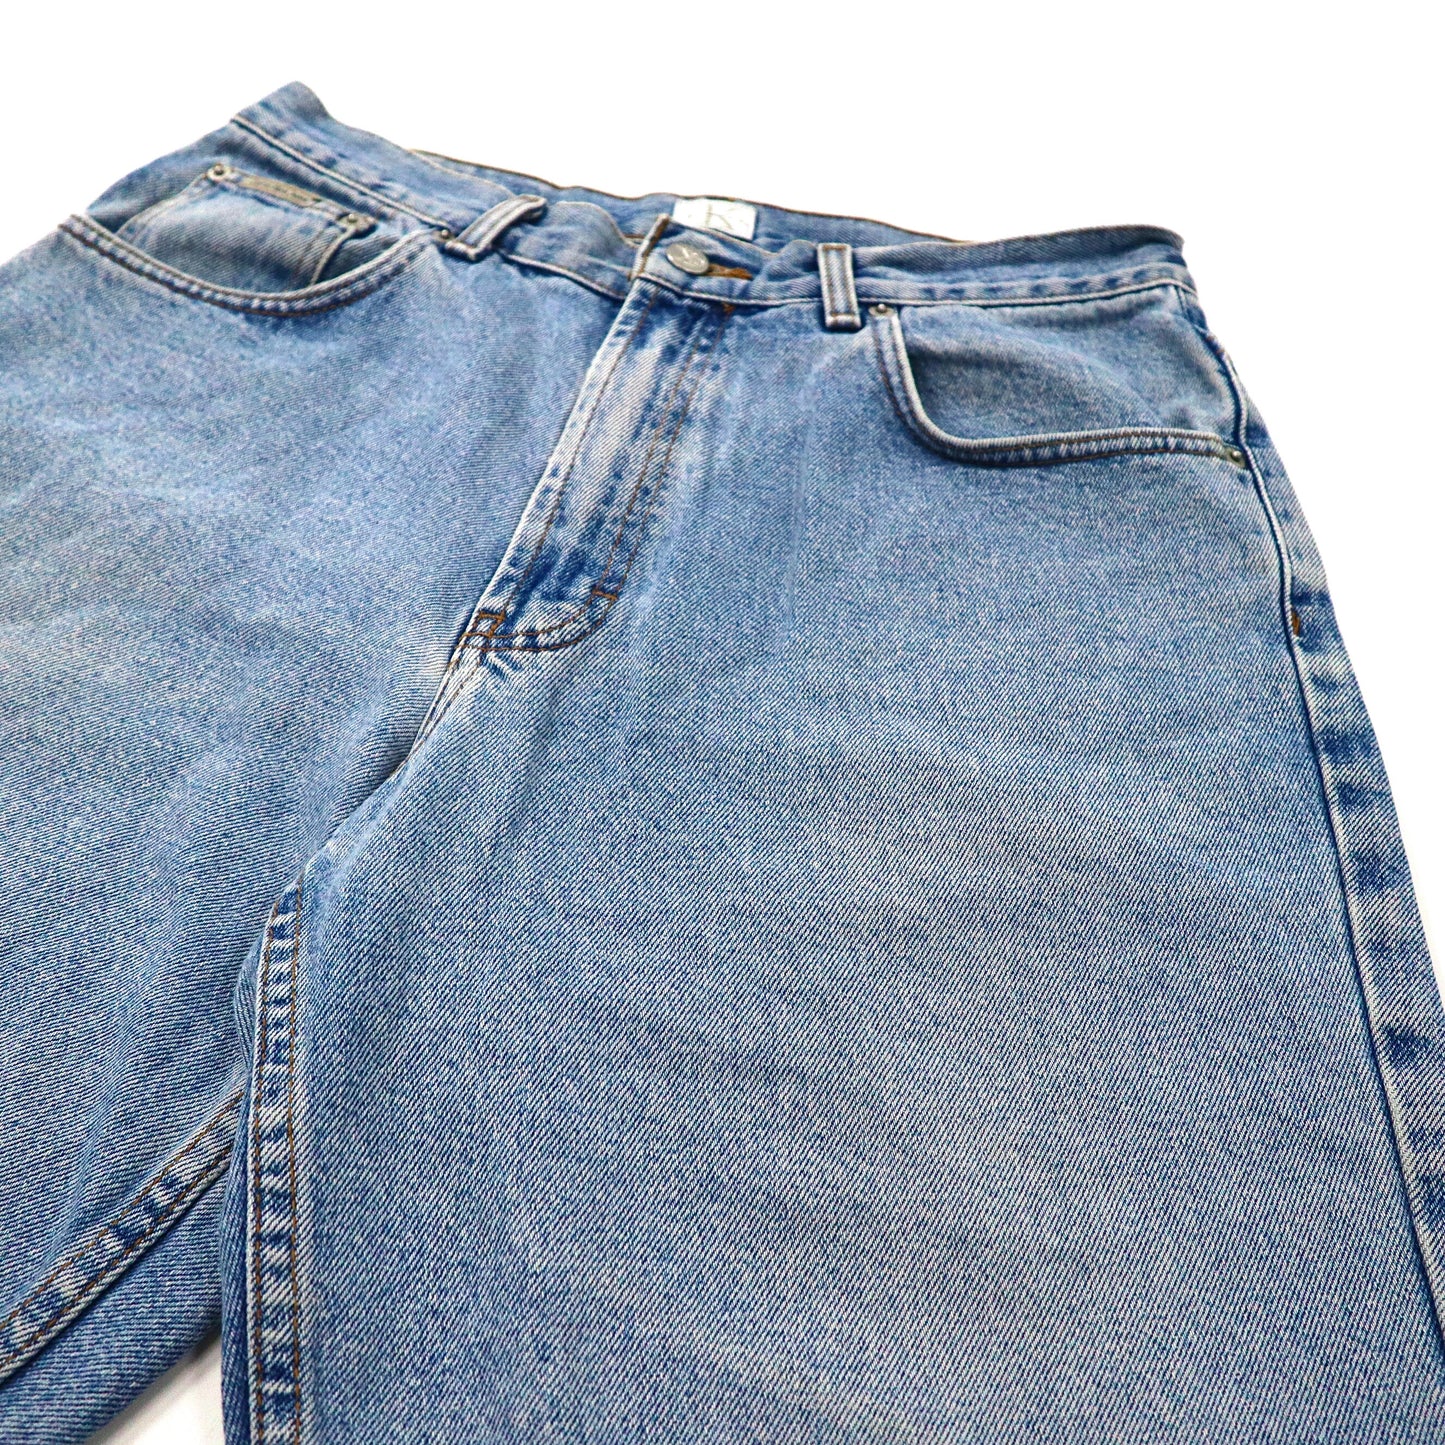 Calvin Klein Jeans デニムショートパンツ ハーフパンツ 32 ブルー アイスウォッシュ 90年代 メキシコ製